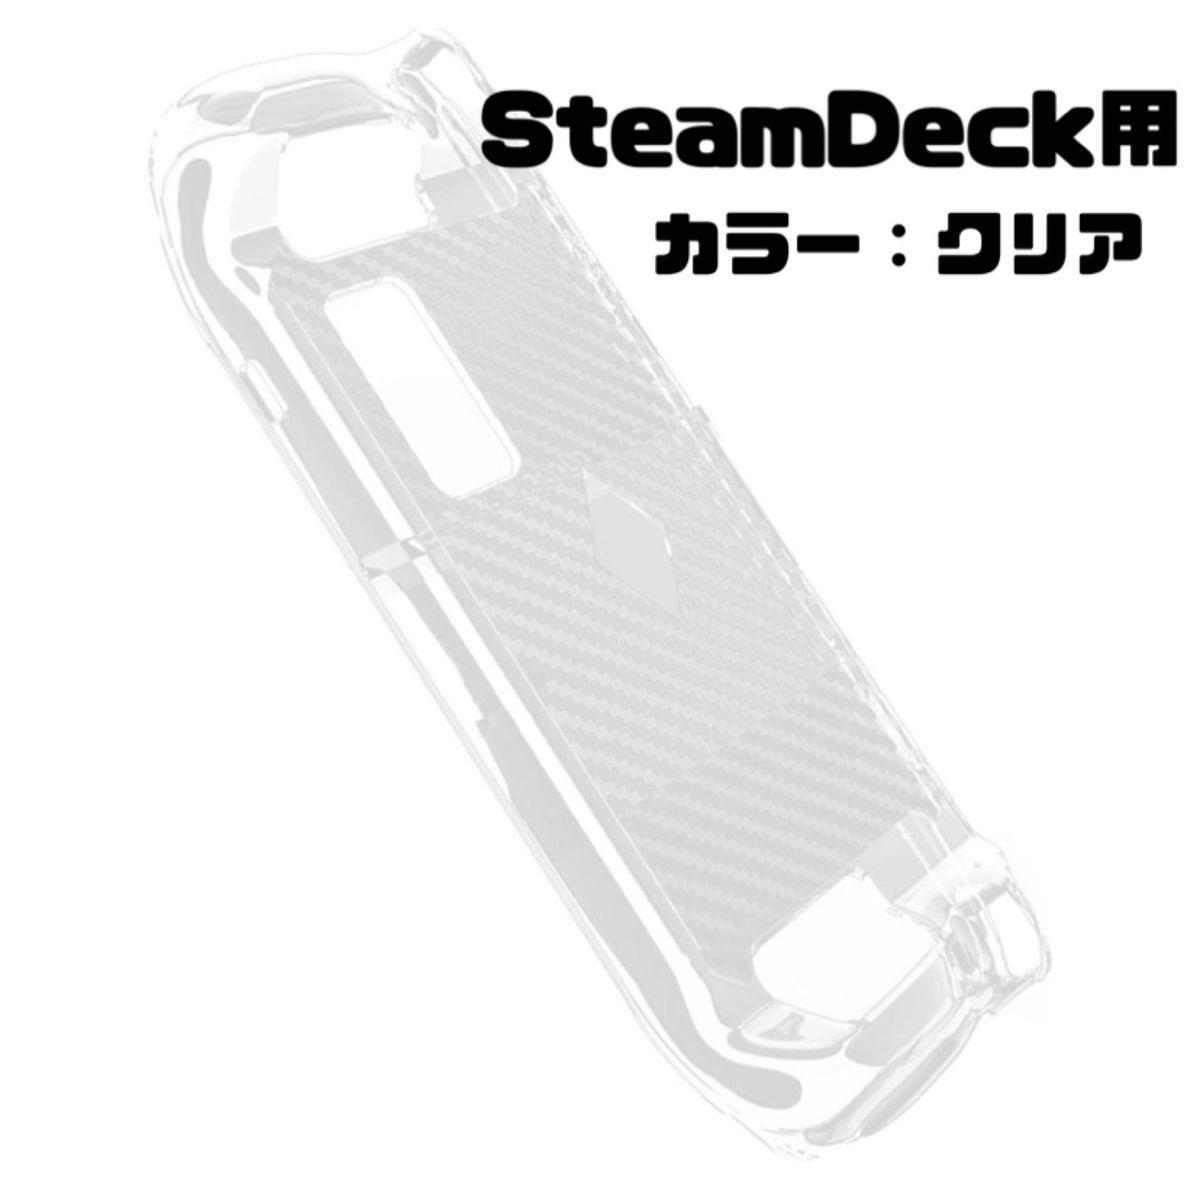 Steam Deck 透明 クリア 耐久性 耐振動 カバー TPU ソフトケース